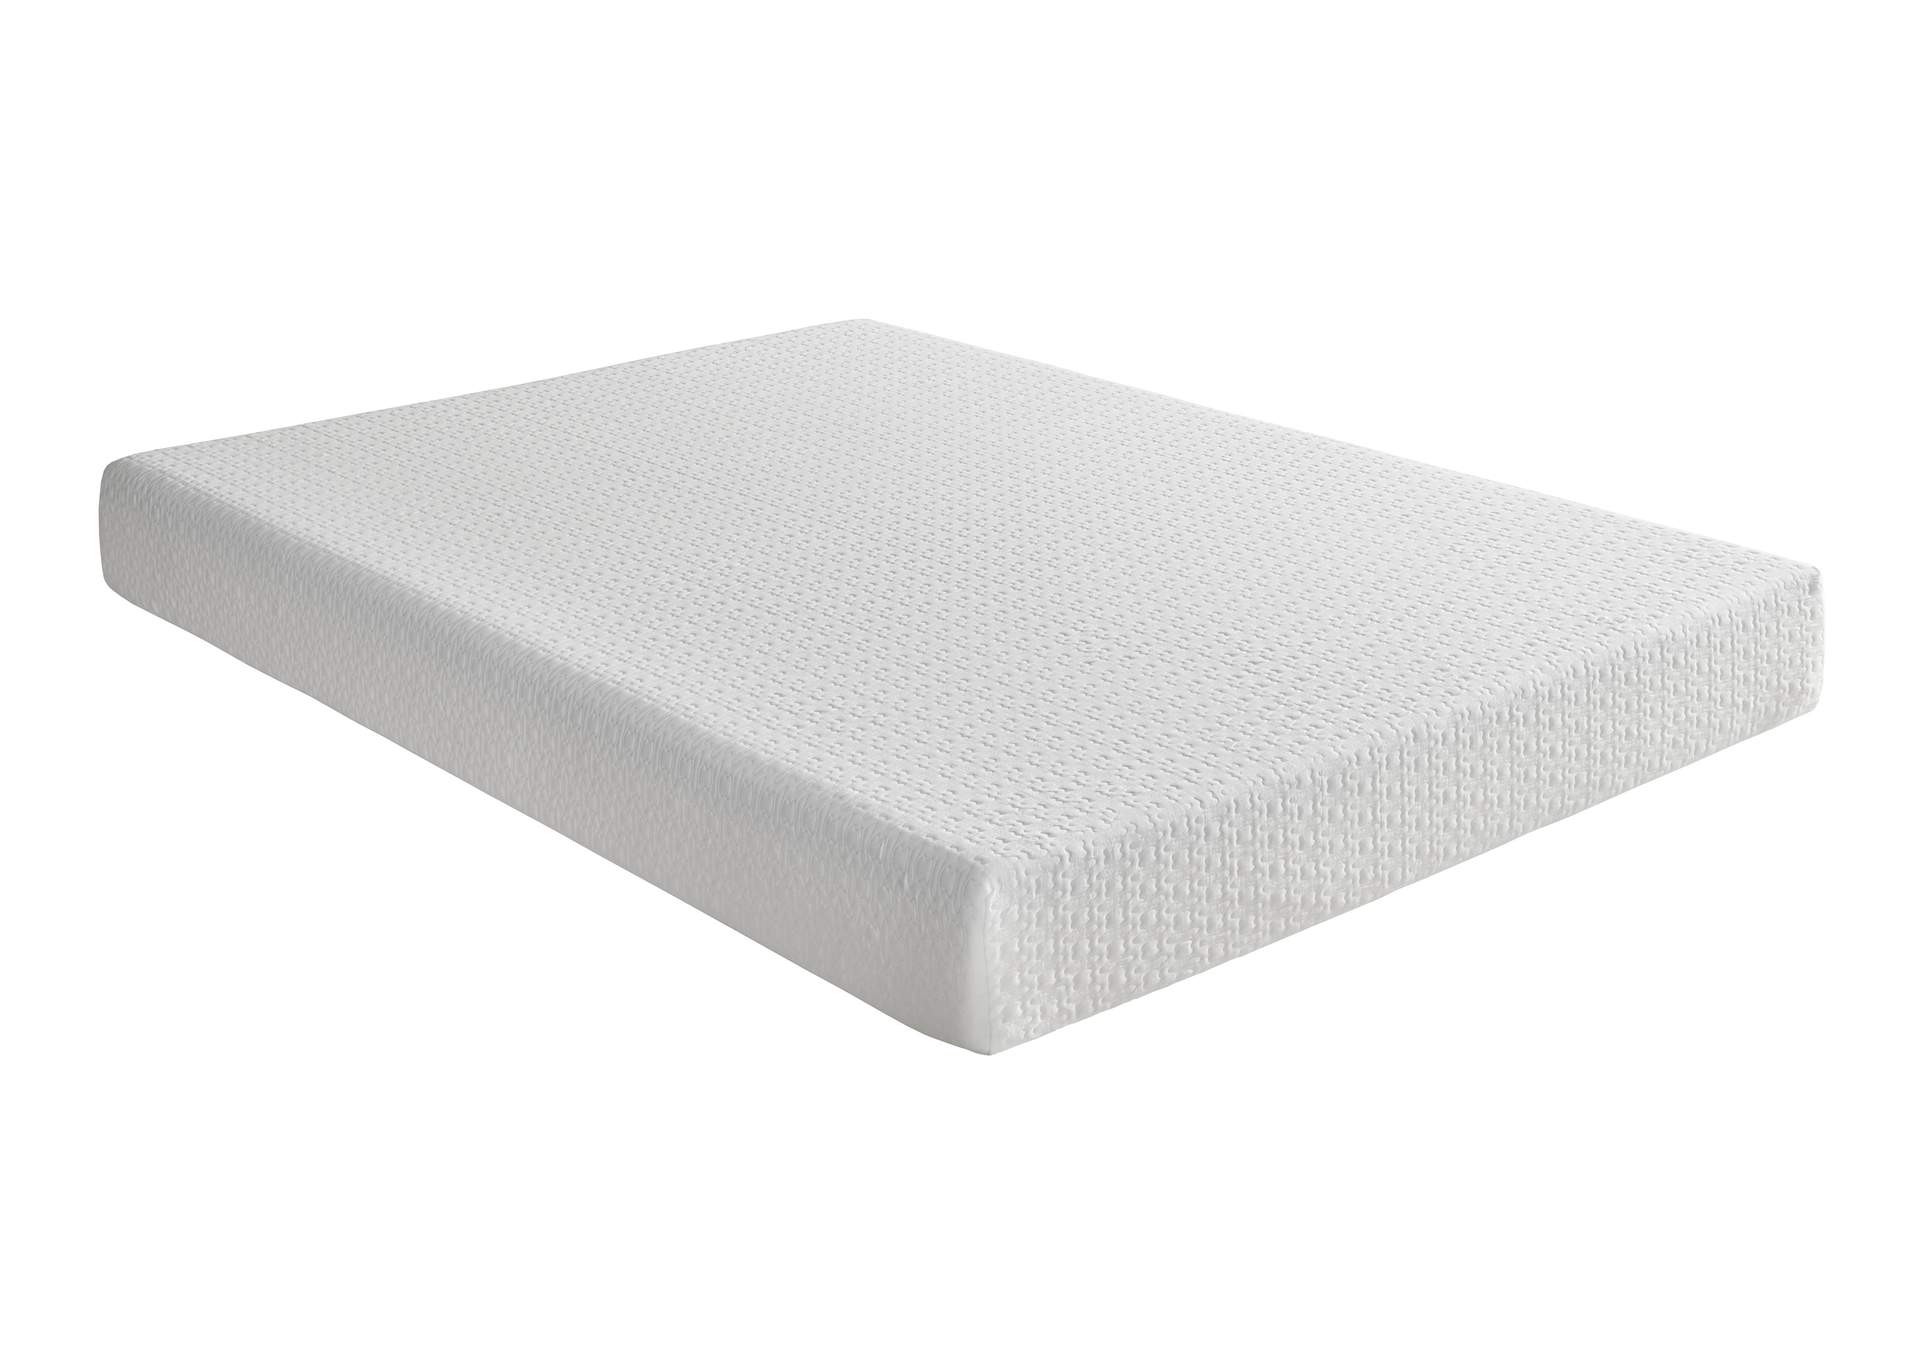 G 6'' Gel-Infused Memory Foam-Bedding White 6" Full Gel Mattress,Homelegance